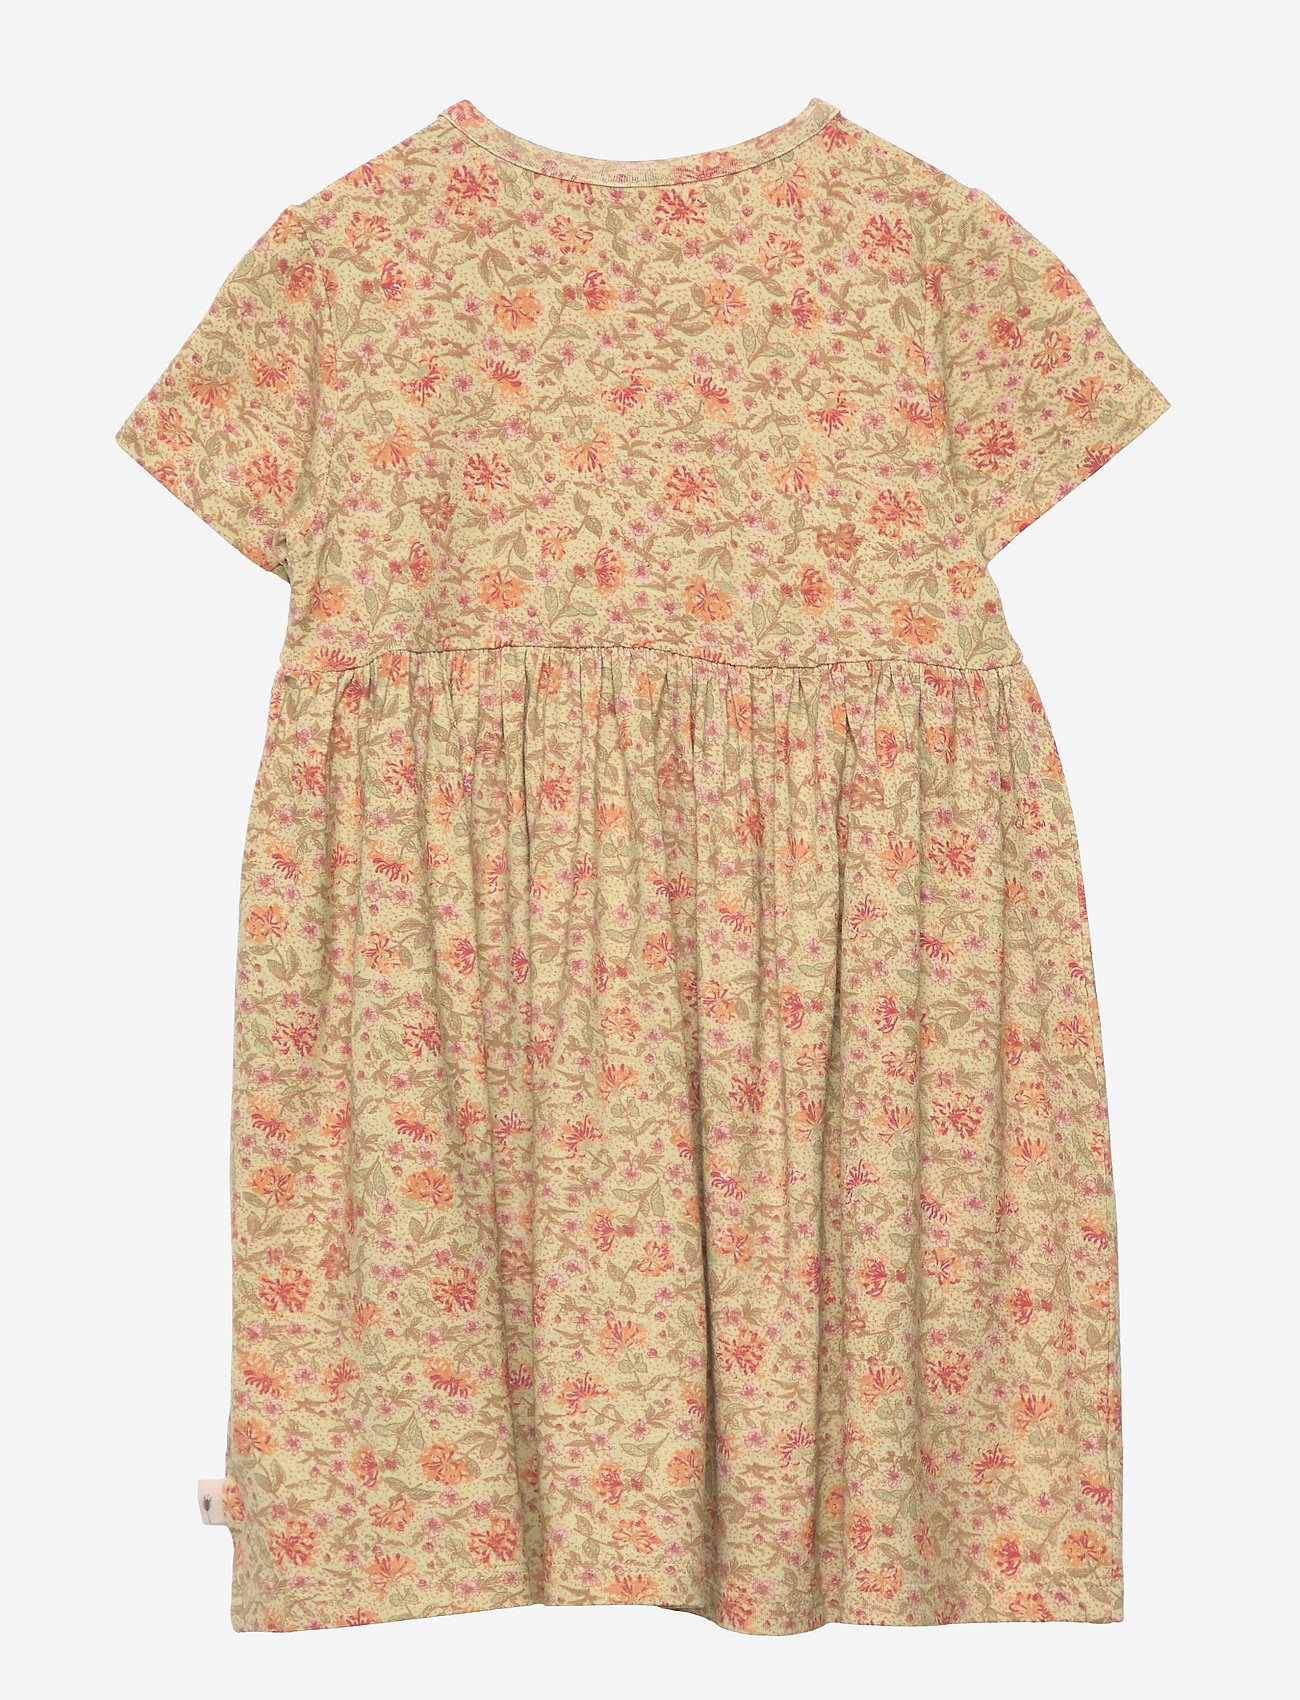 Wheat - Dress Nova - short-sleeved baby dresses - honeysuckle - 1